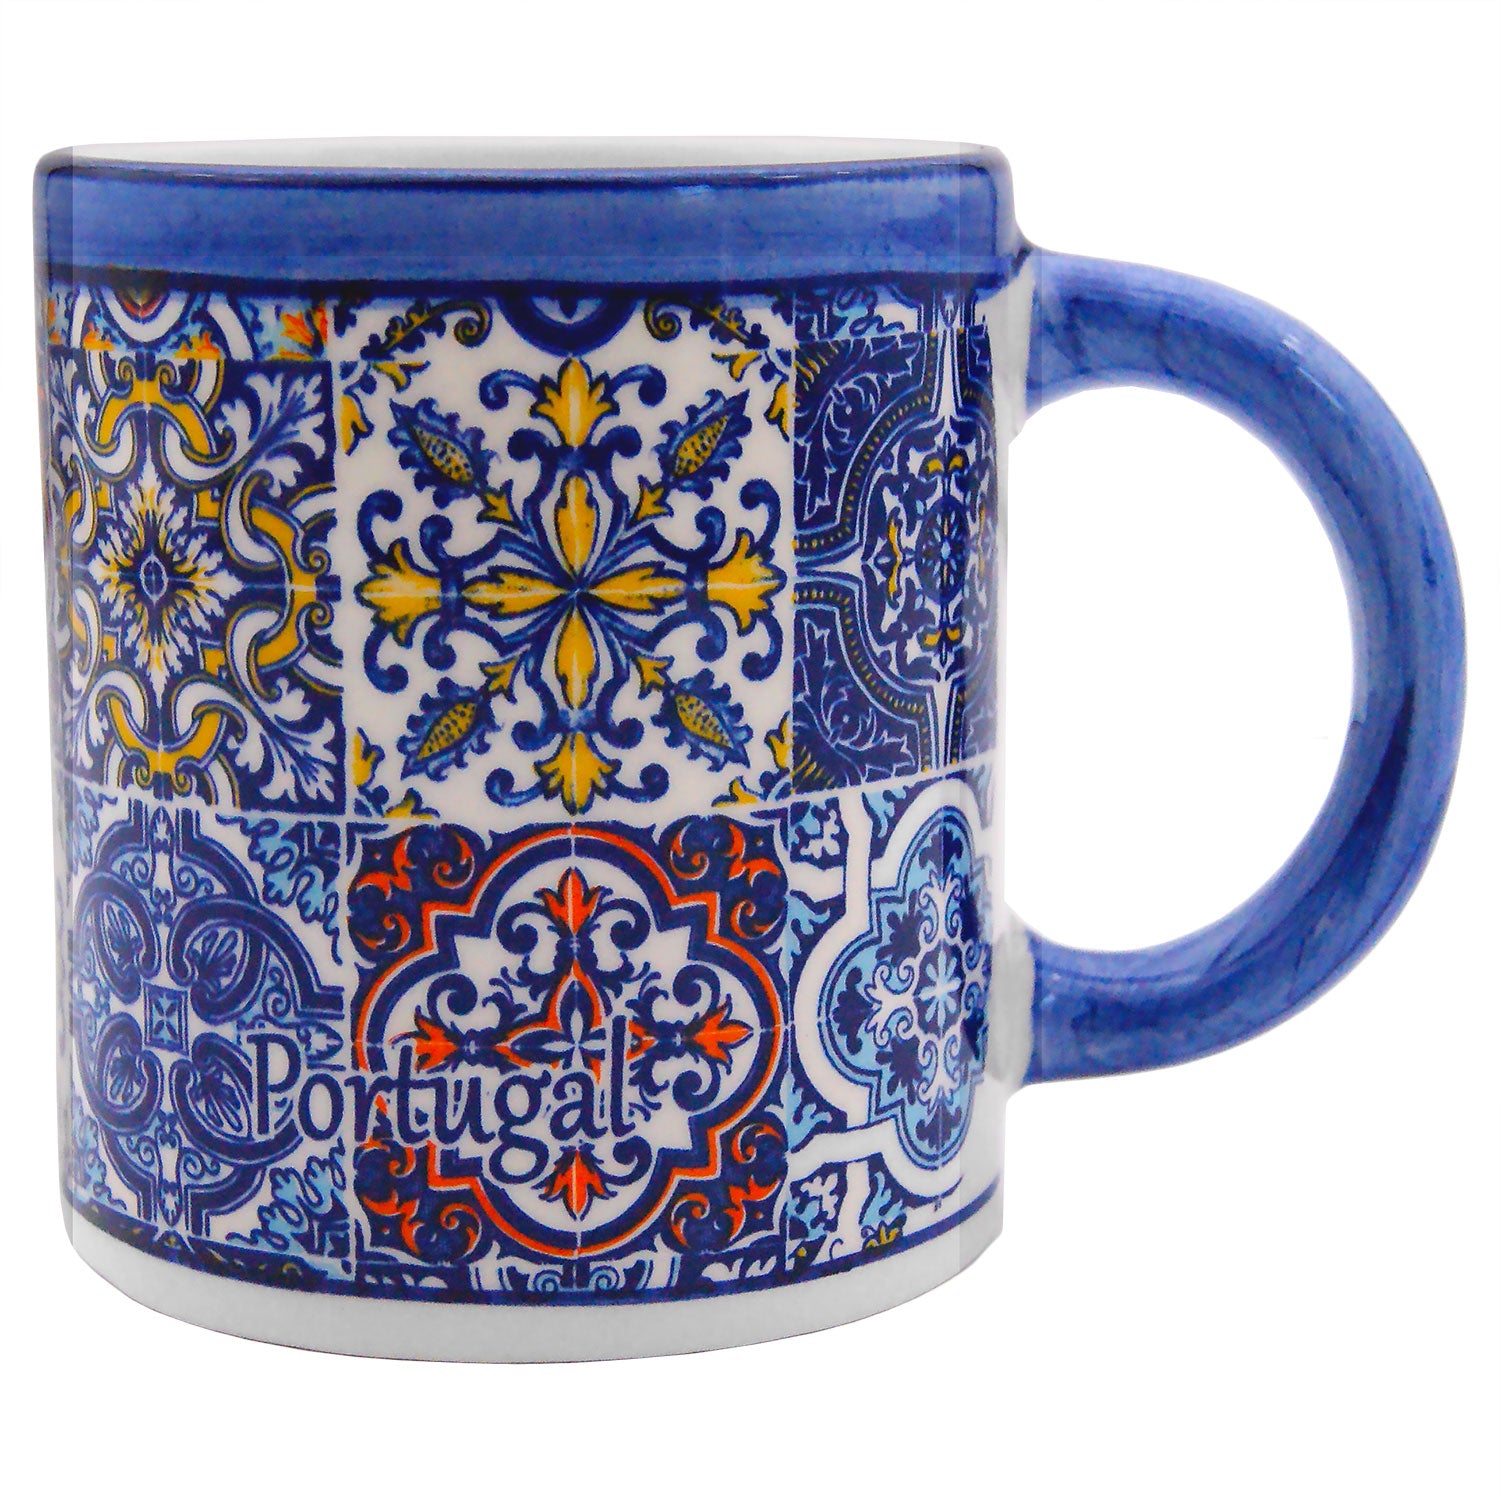 Portuguese Pottery Alcobaça Ceramic Coffee Mug - Set of 2